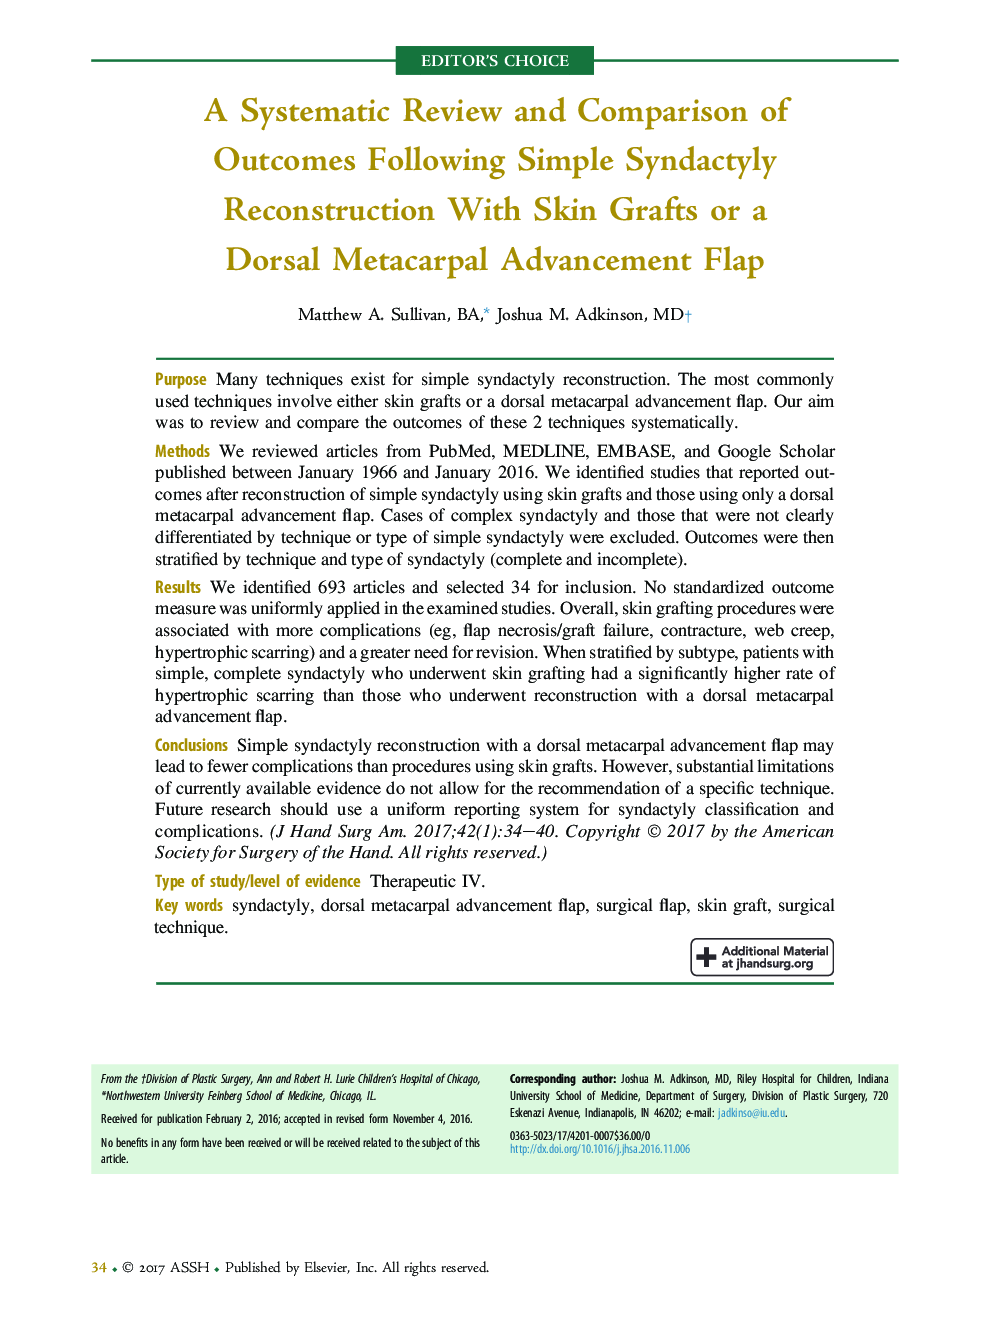 یک بررسی سیستماتیک و مقایسه نتایج پس از بازسازی سنداکتی ساده با پیوند پوست یا یک فلاپ پیشرفت پشتی متاکارپال 